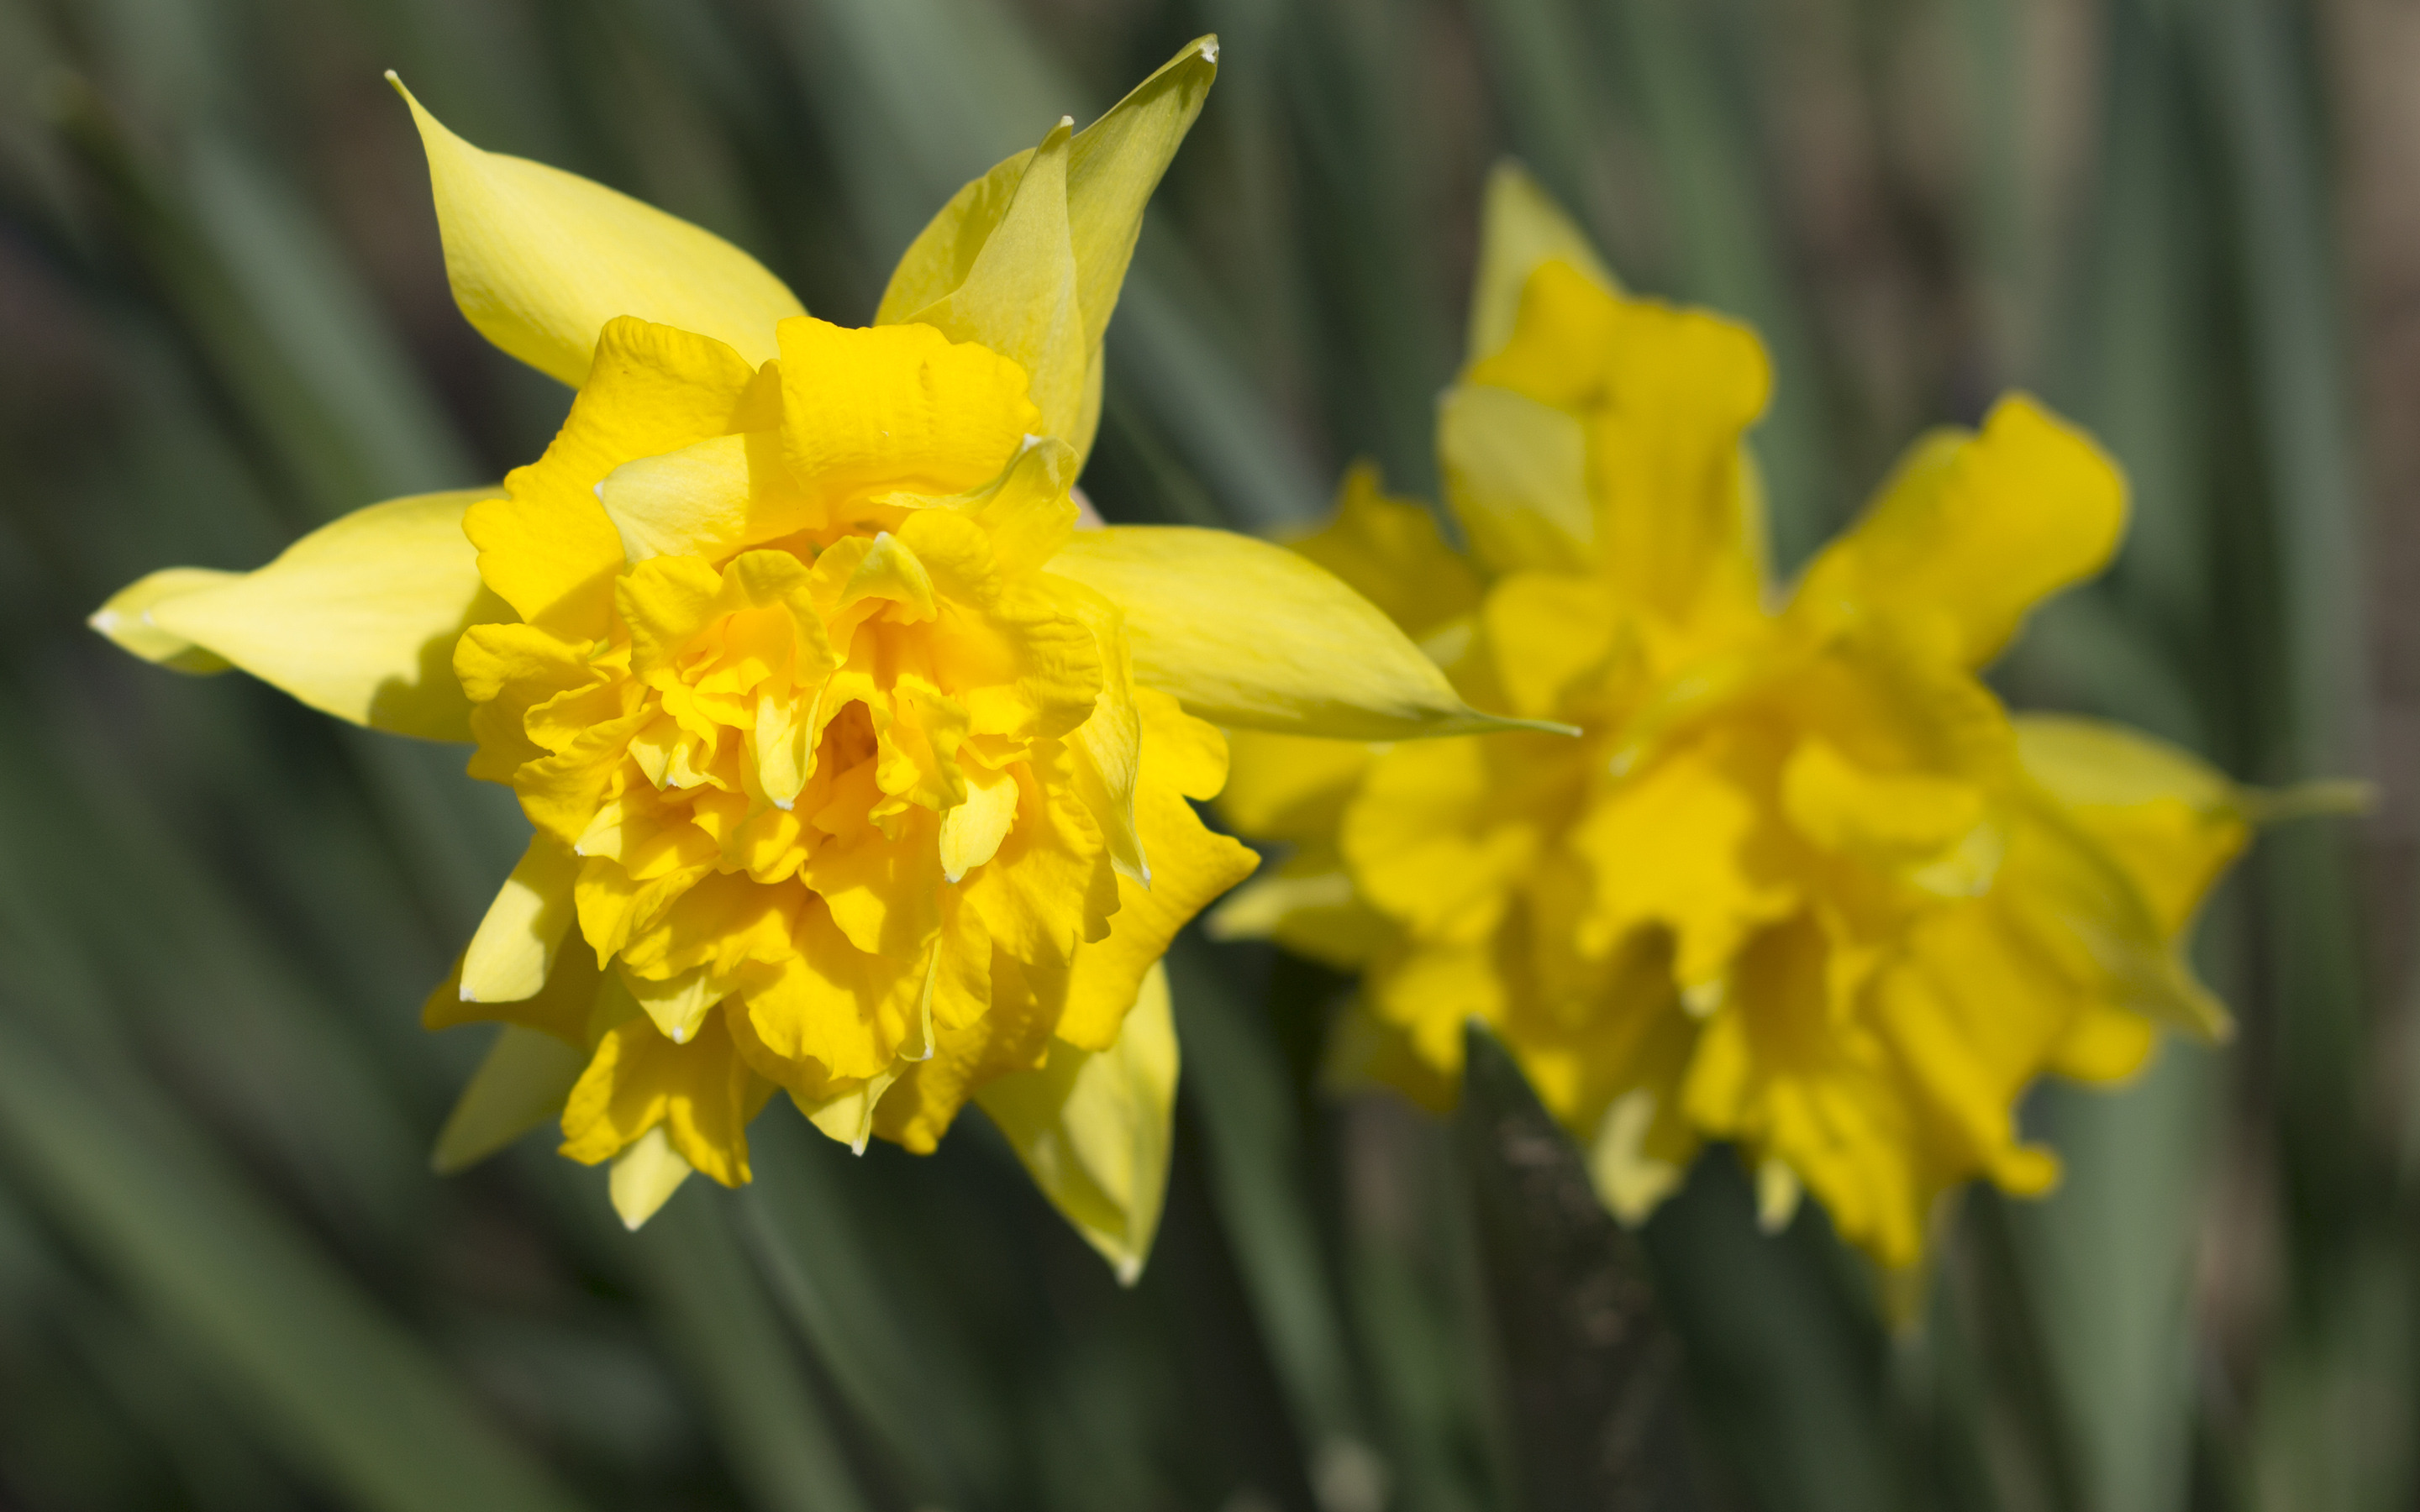 Daffodils Wallpaper